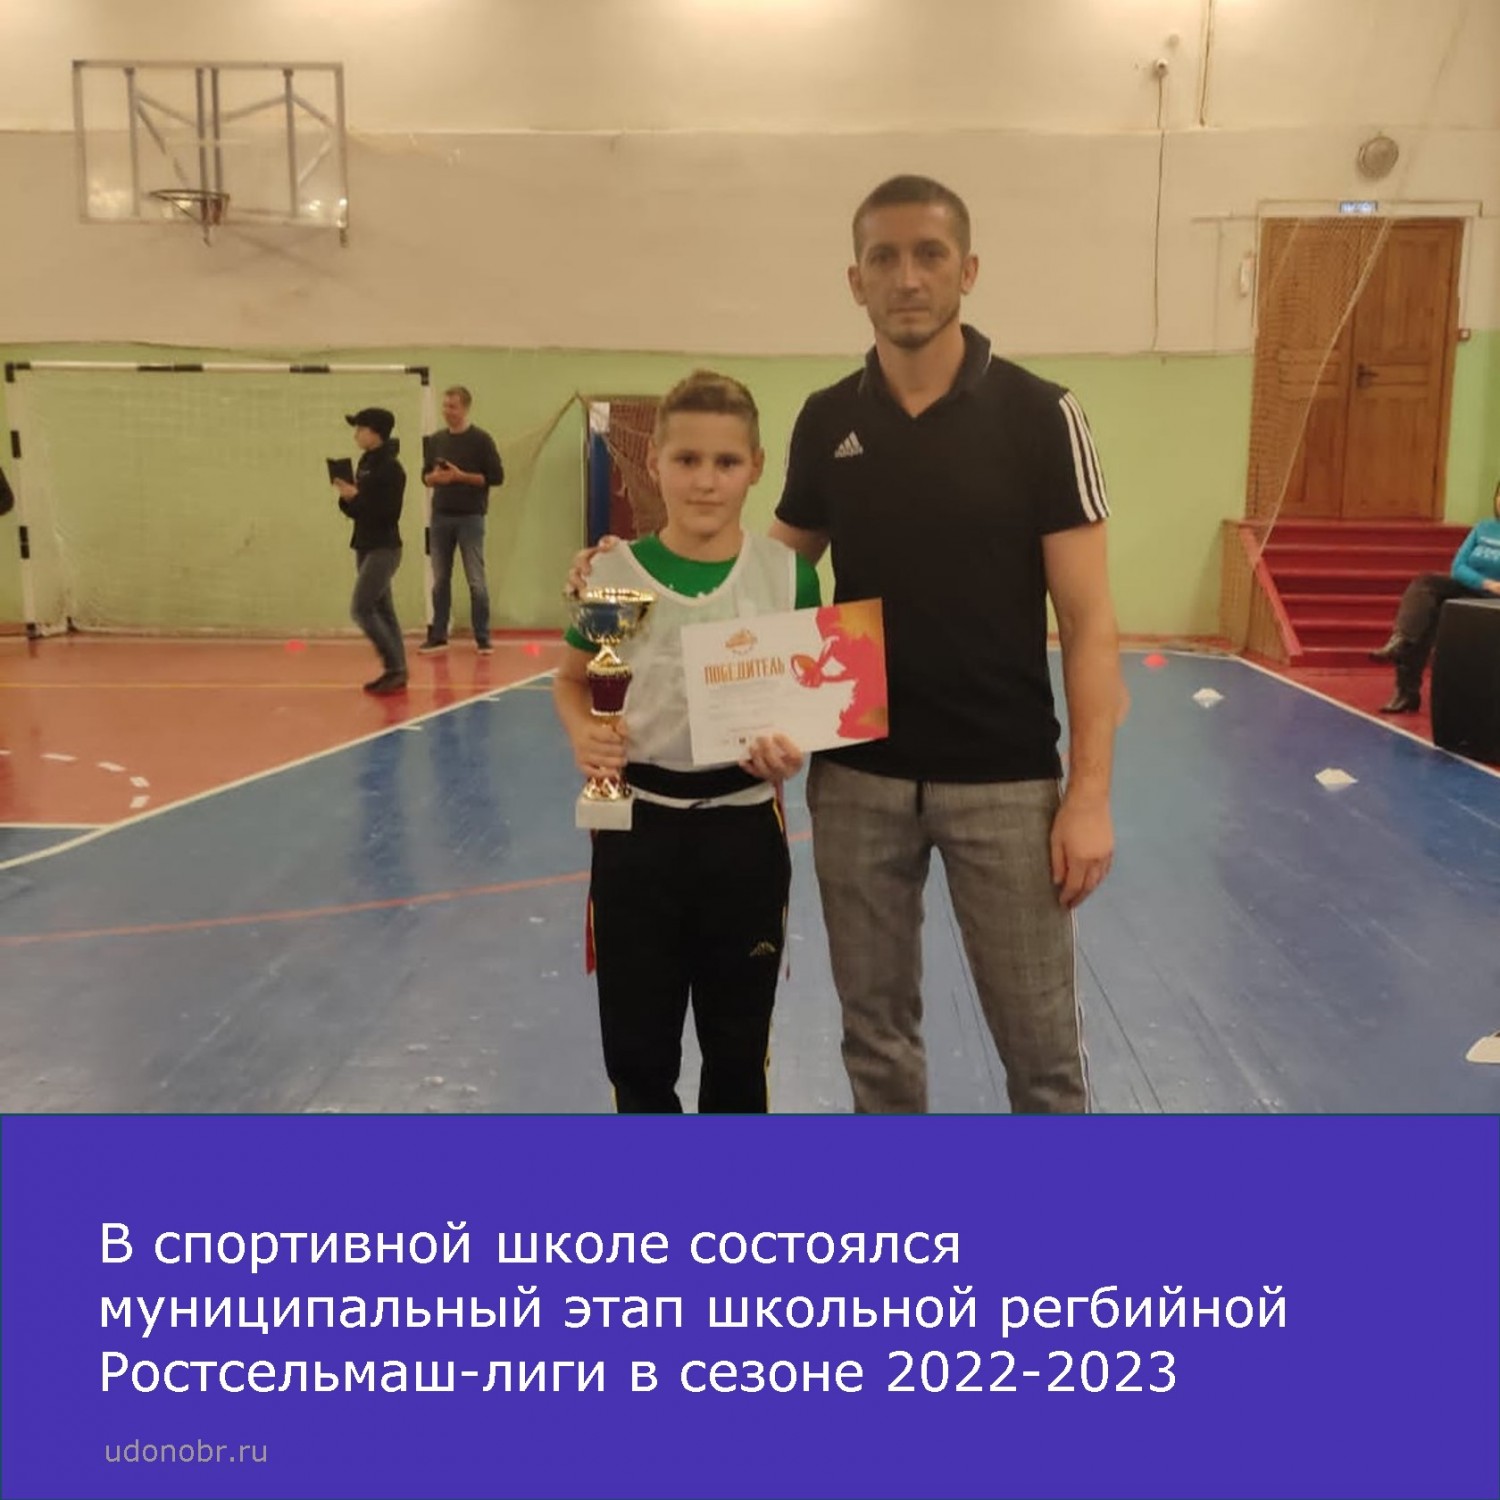 В спортивной школе Усть-Донецкого района состоялся муниципальный этап школьной регбийной Ростсельмаш-лиги в сезоне 2022-2023